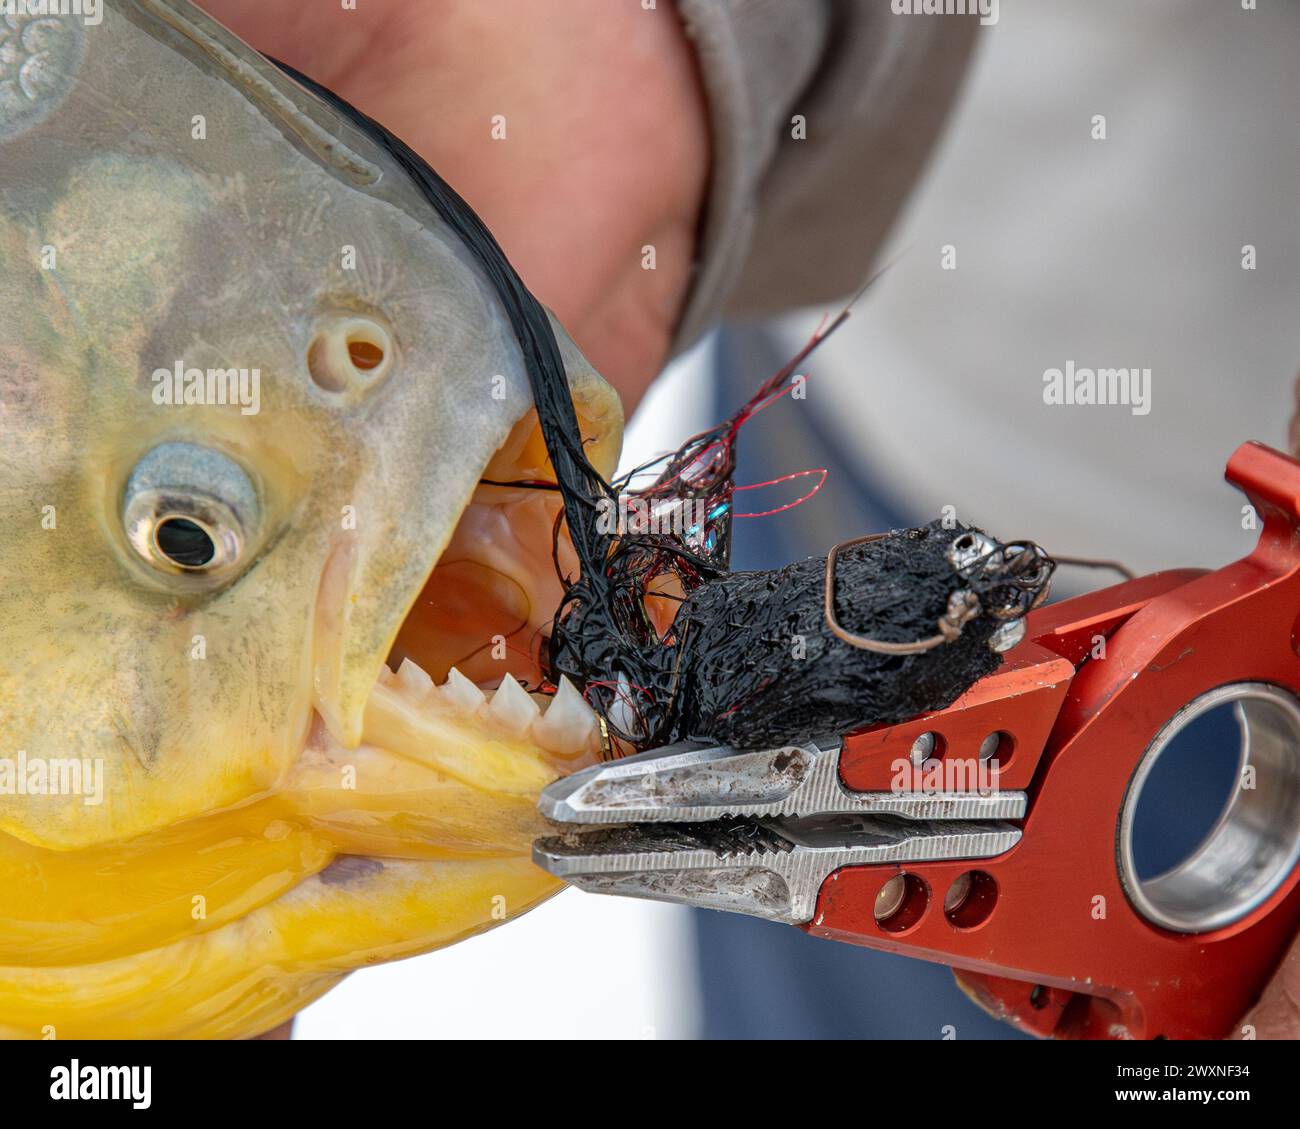 Eine Person, die eine Zange benutzt, um Köder aus dem Mund eines dorado-Fisches zu extrahieren Stockfoto